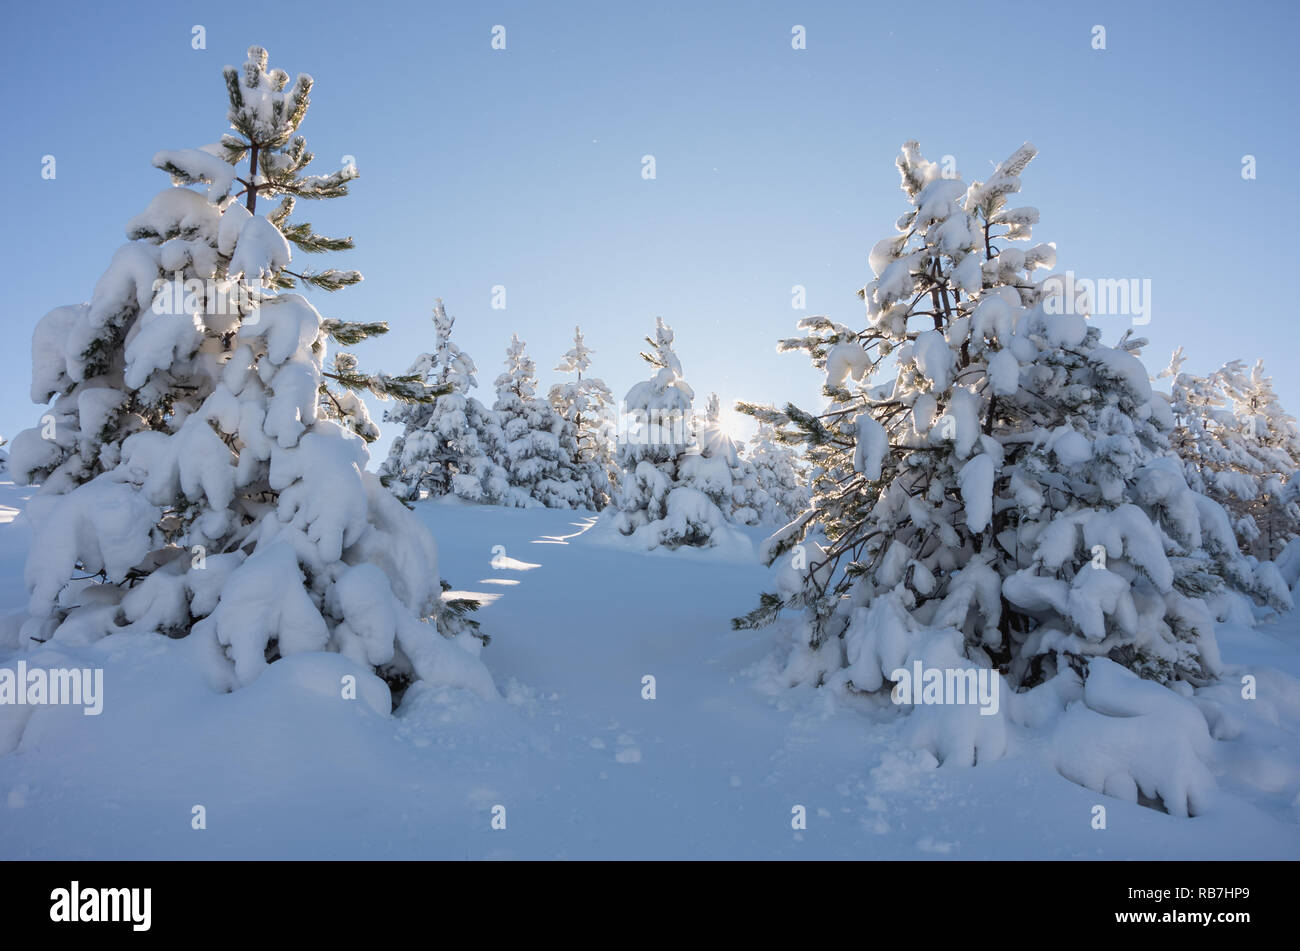 La beauté de l'hiver dans les montagnes Zlatibor, Serbie. Banque D'Images